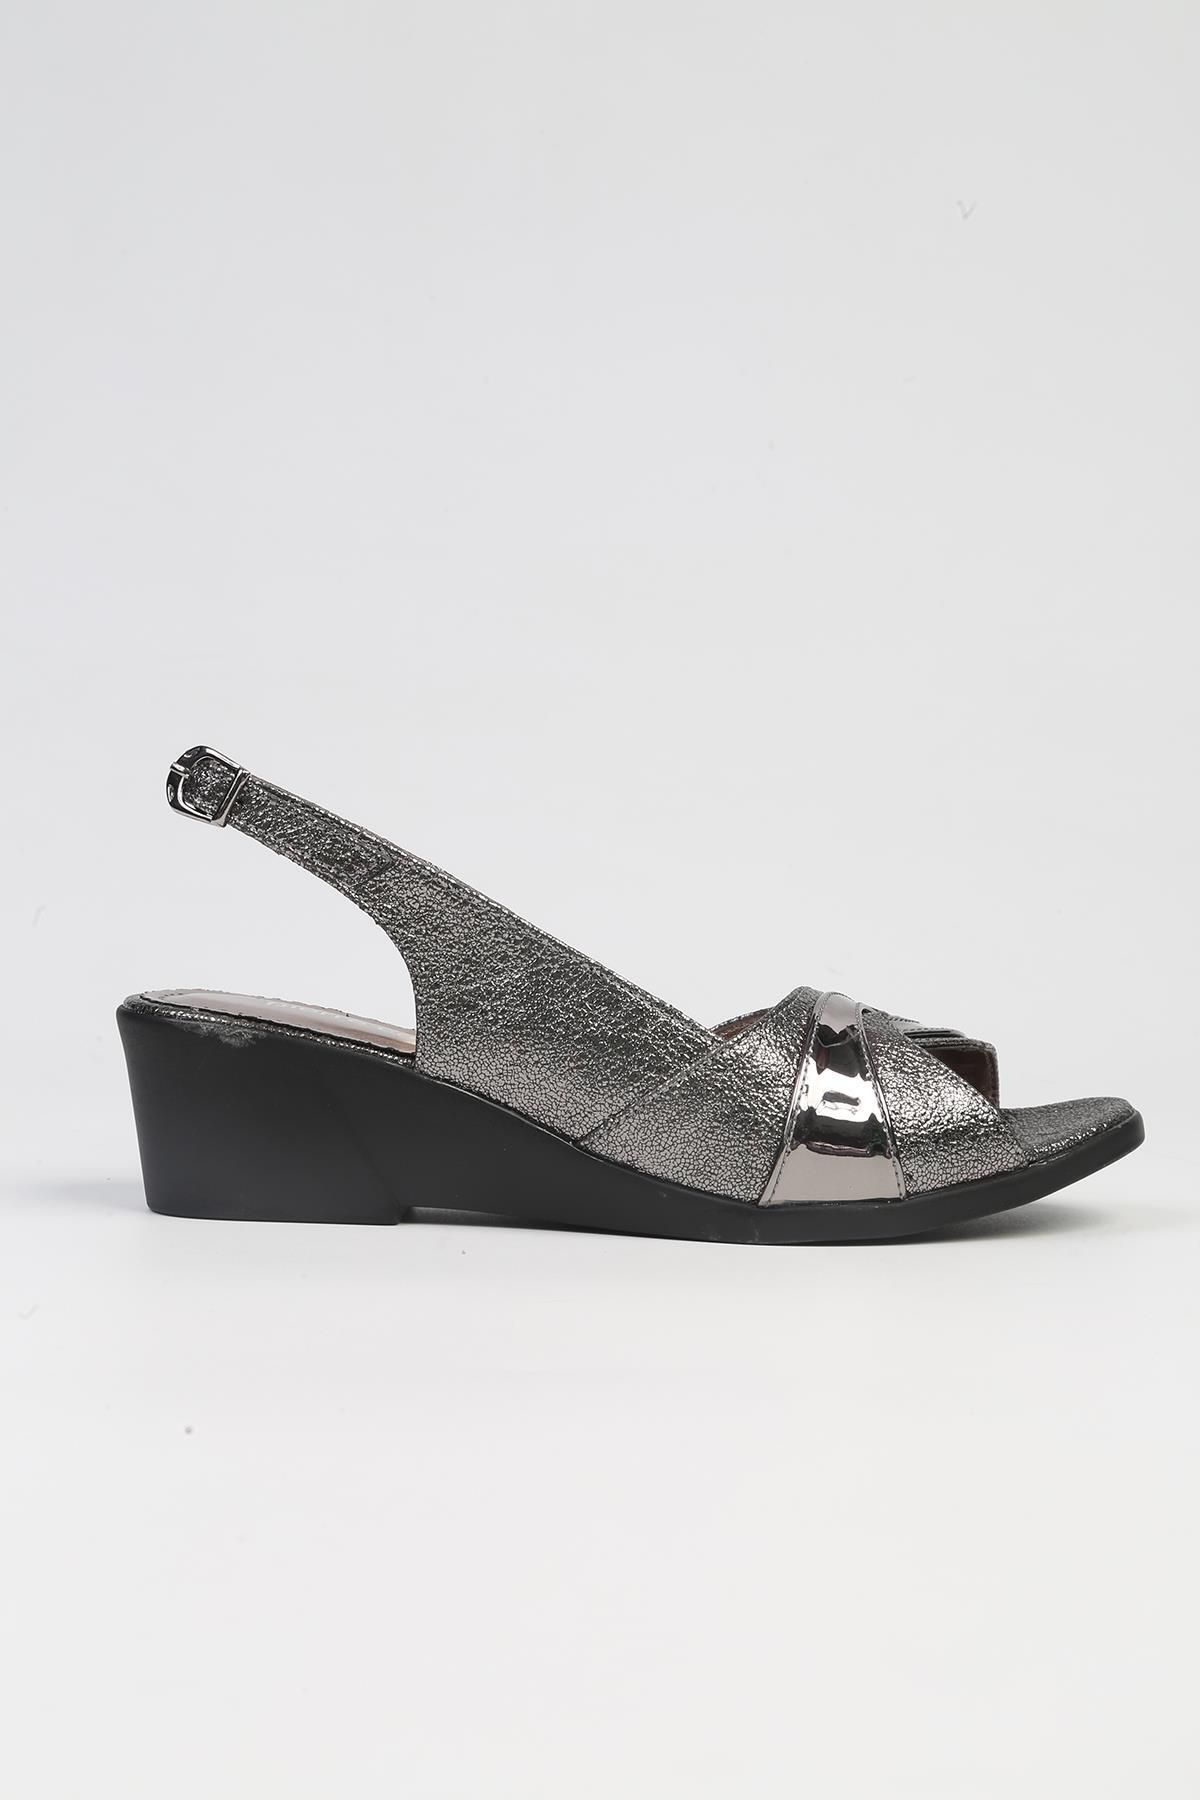 Pierre Cardin ® | PC-53031- 3341 Platin-Kadın Topuklu Ayakkabı